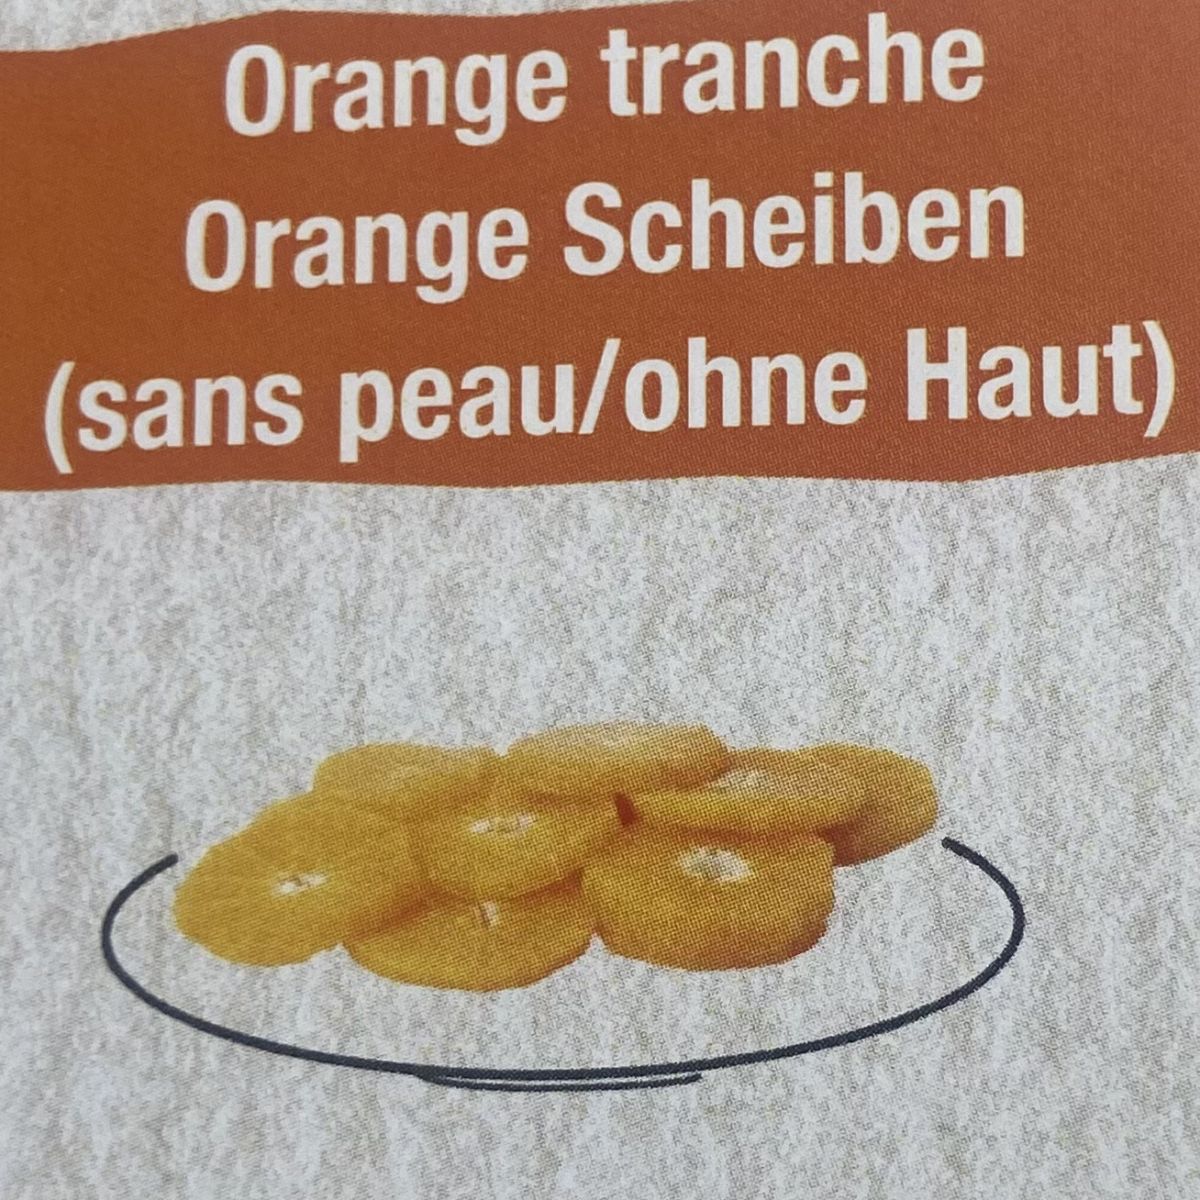 Oranges Tranches 20gr Sans peau 3Kg